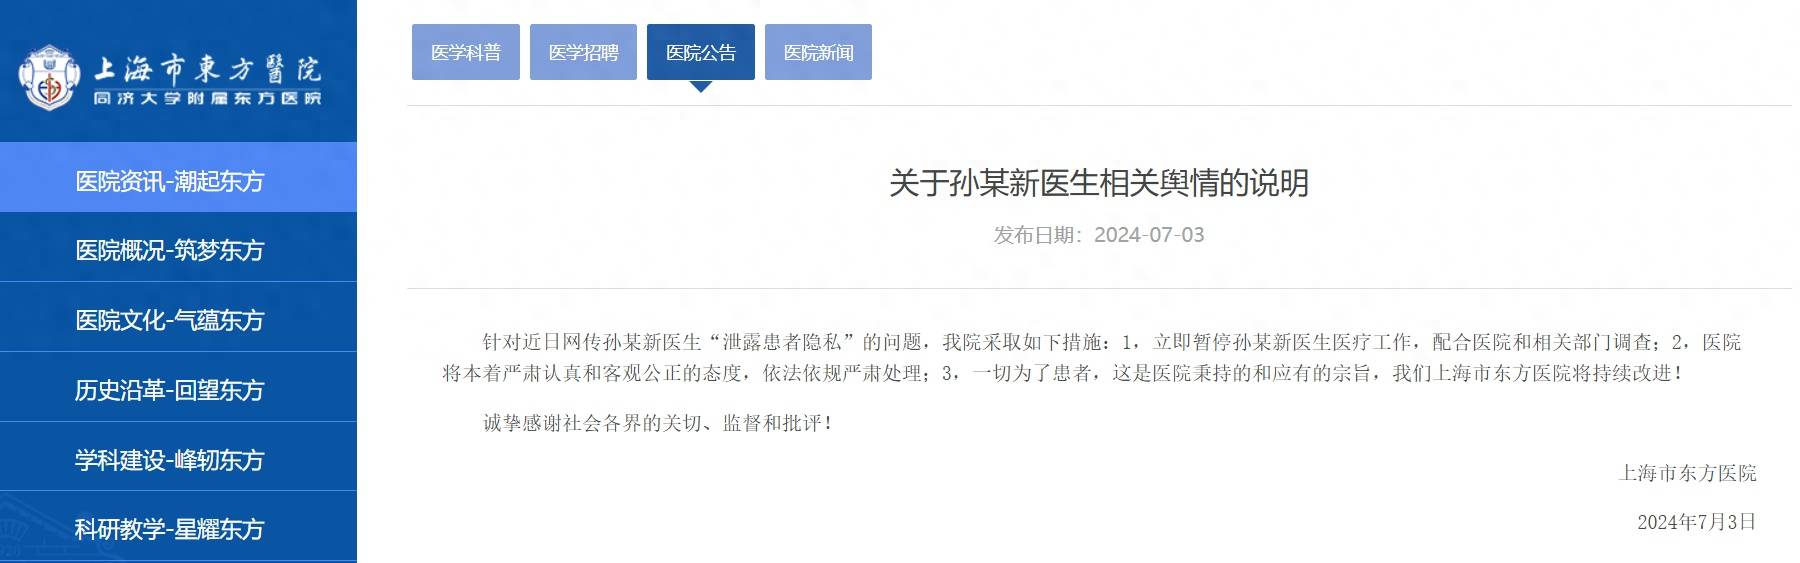 配合调查 上海市东方医院通报 医生泄露患者隐私 暂停涉事医生医疗工作